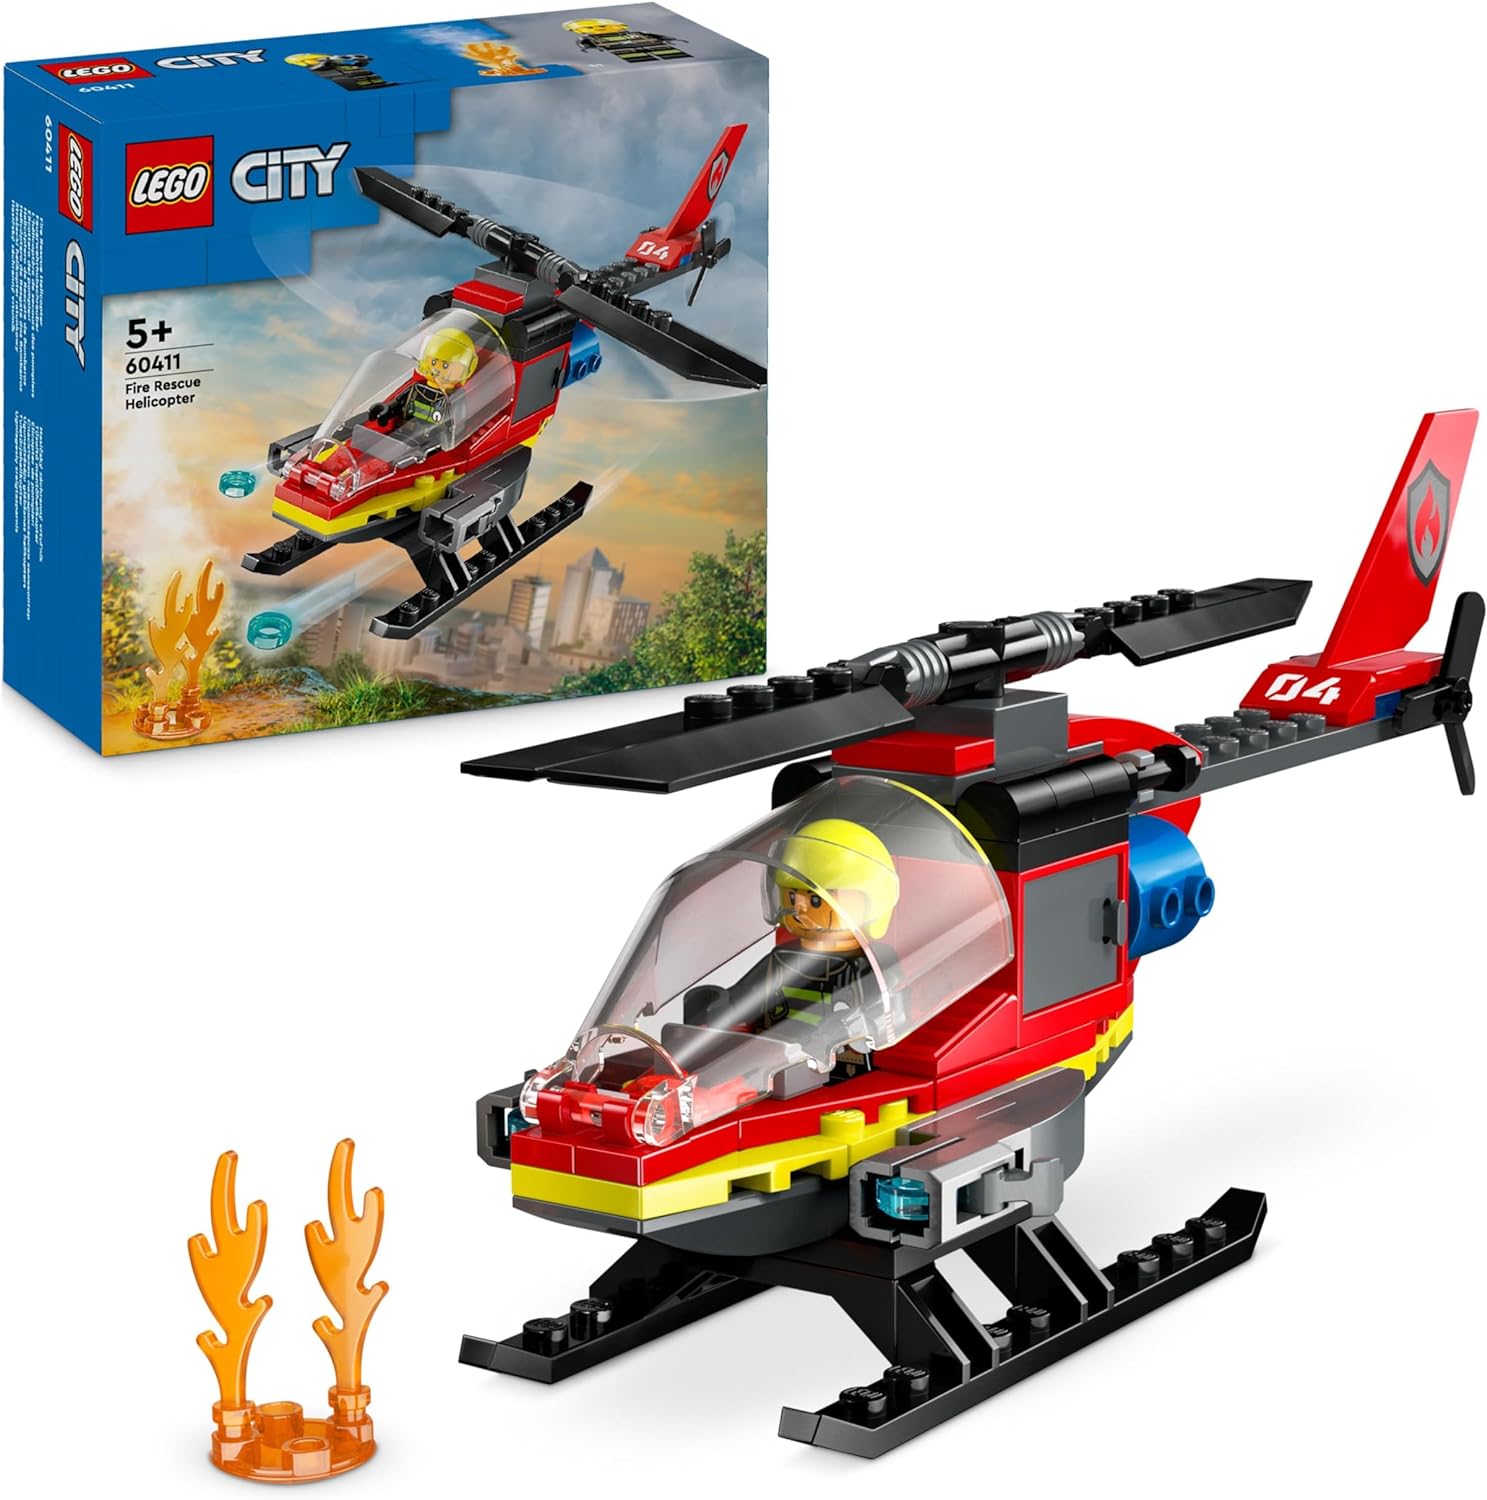 Flugzeug, Hubschrauber, Transport, Fahrzeug, Spielzeug